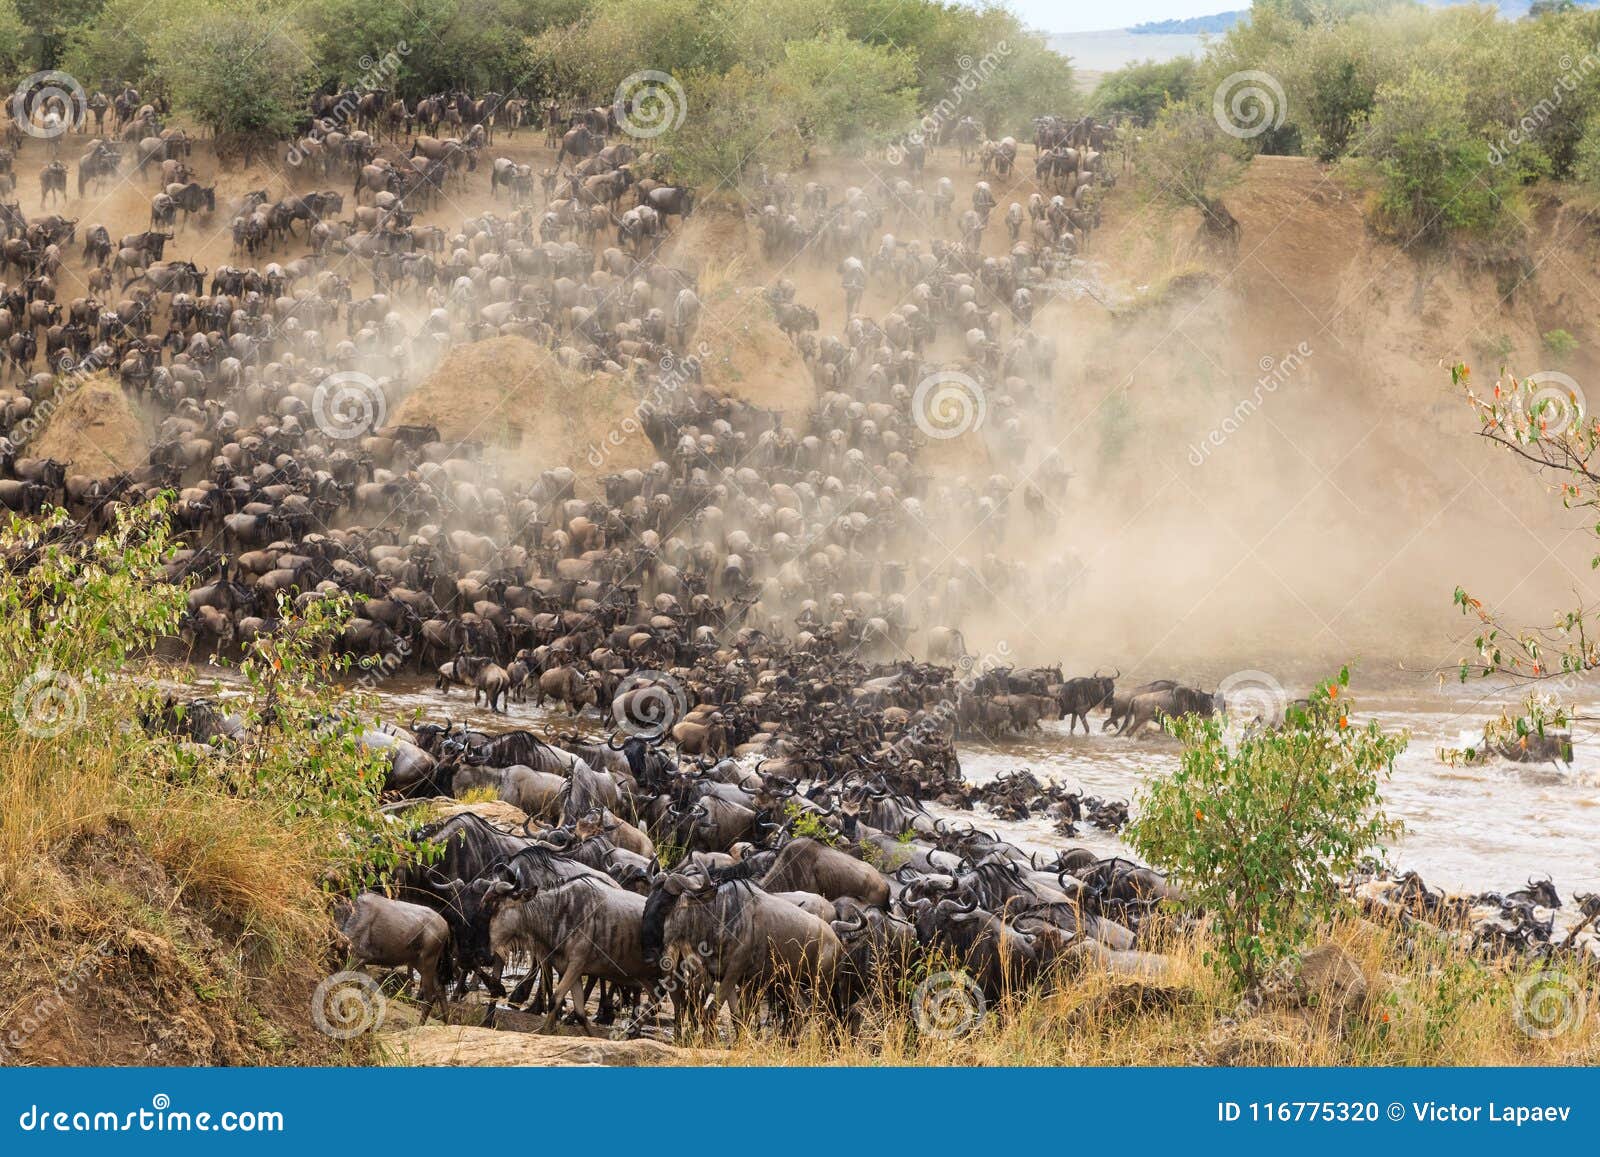 great migration in africa. huge herds of herbivores. mara river, kenya